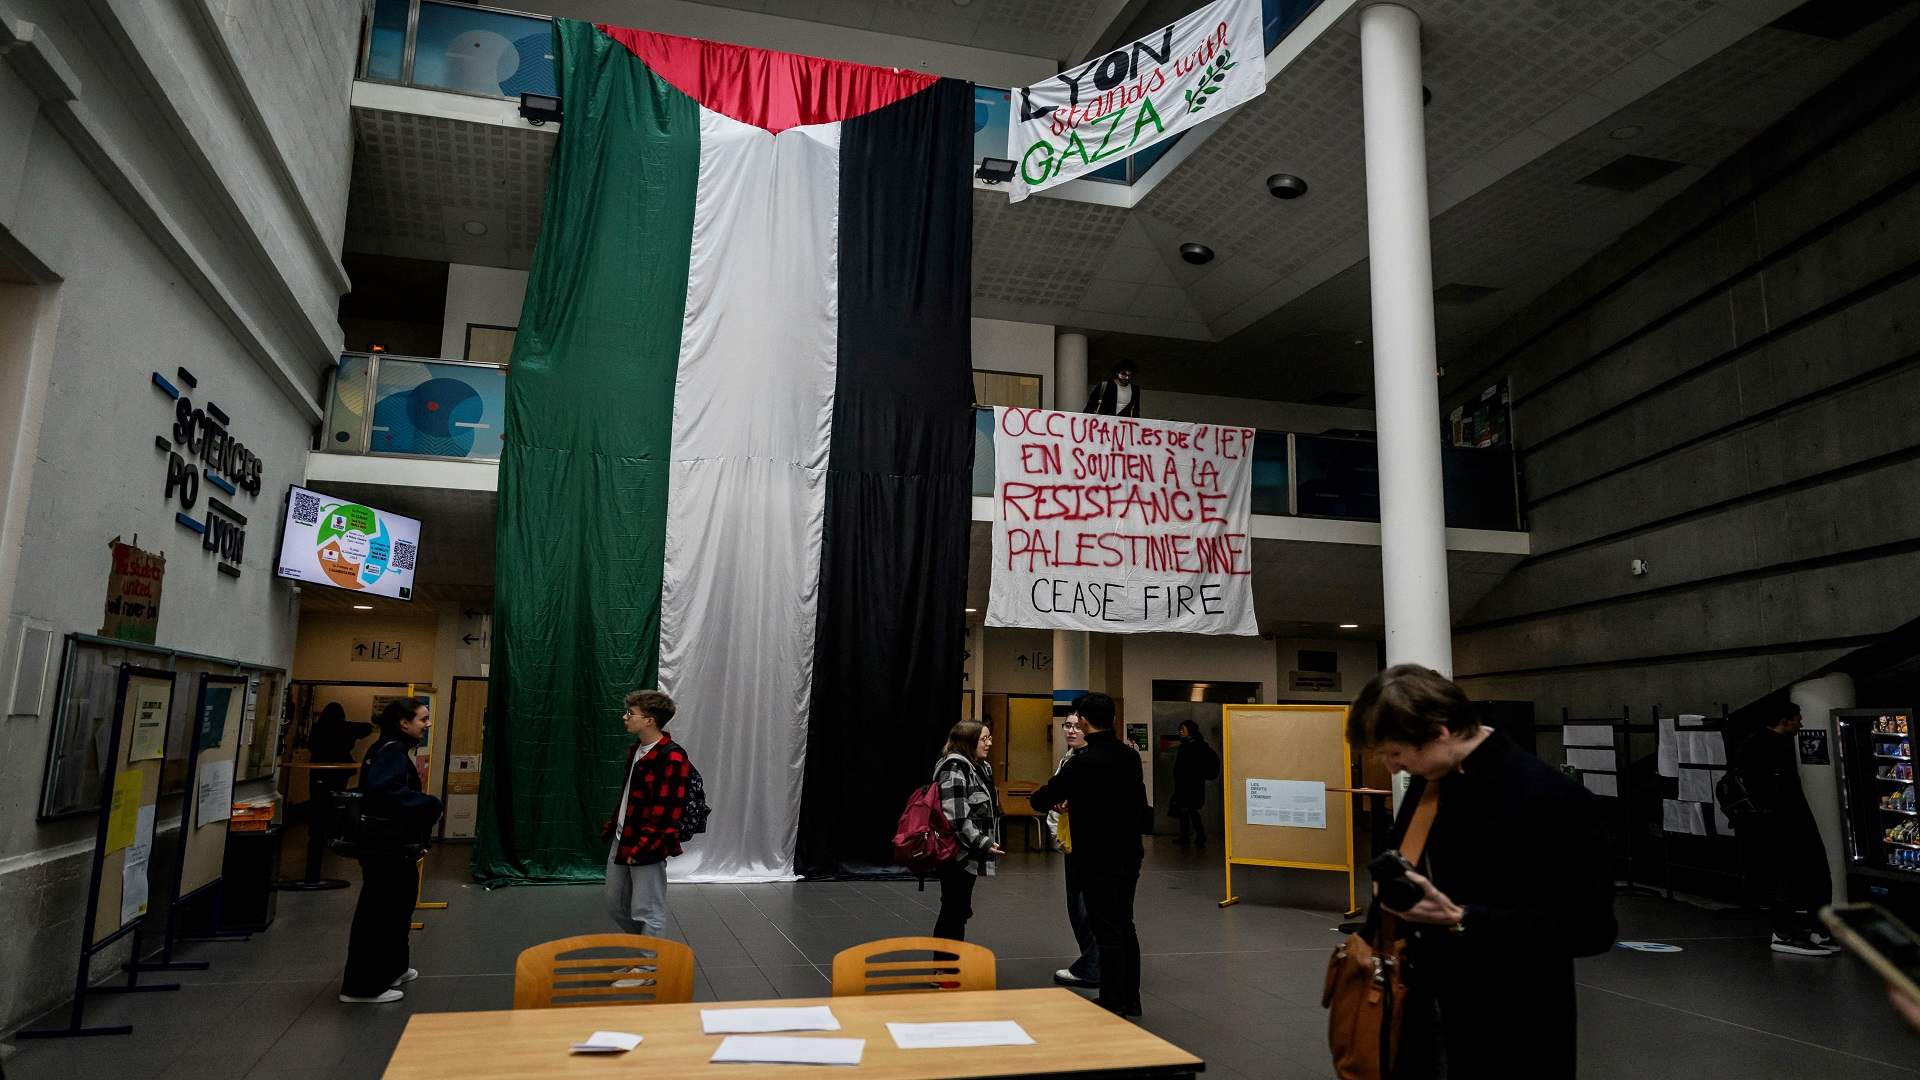 الشرطة تدخل جامعة سيانس بو في باريس حيث يعتصم طلاب دعما لغزة